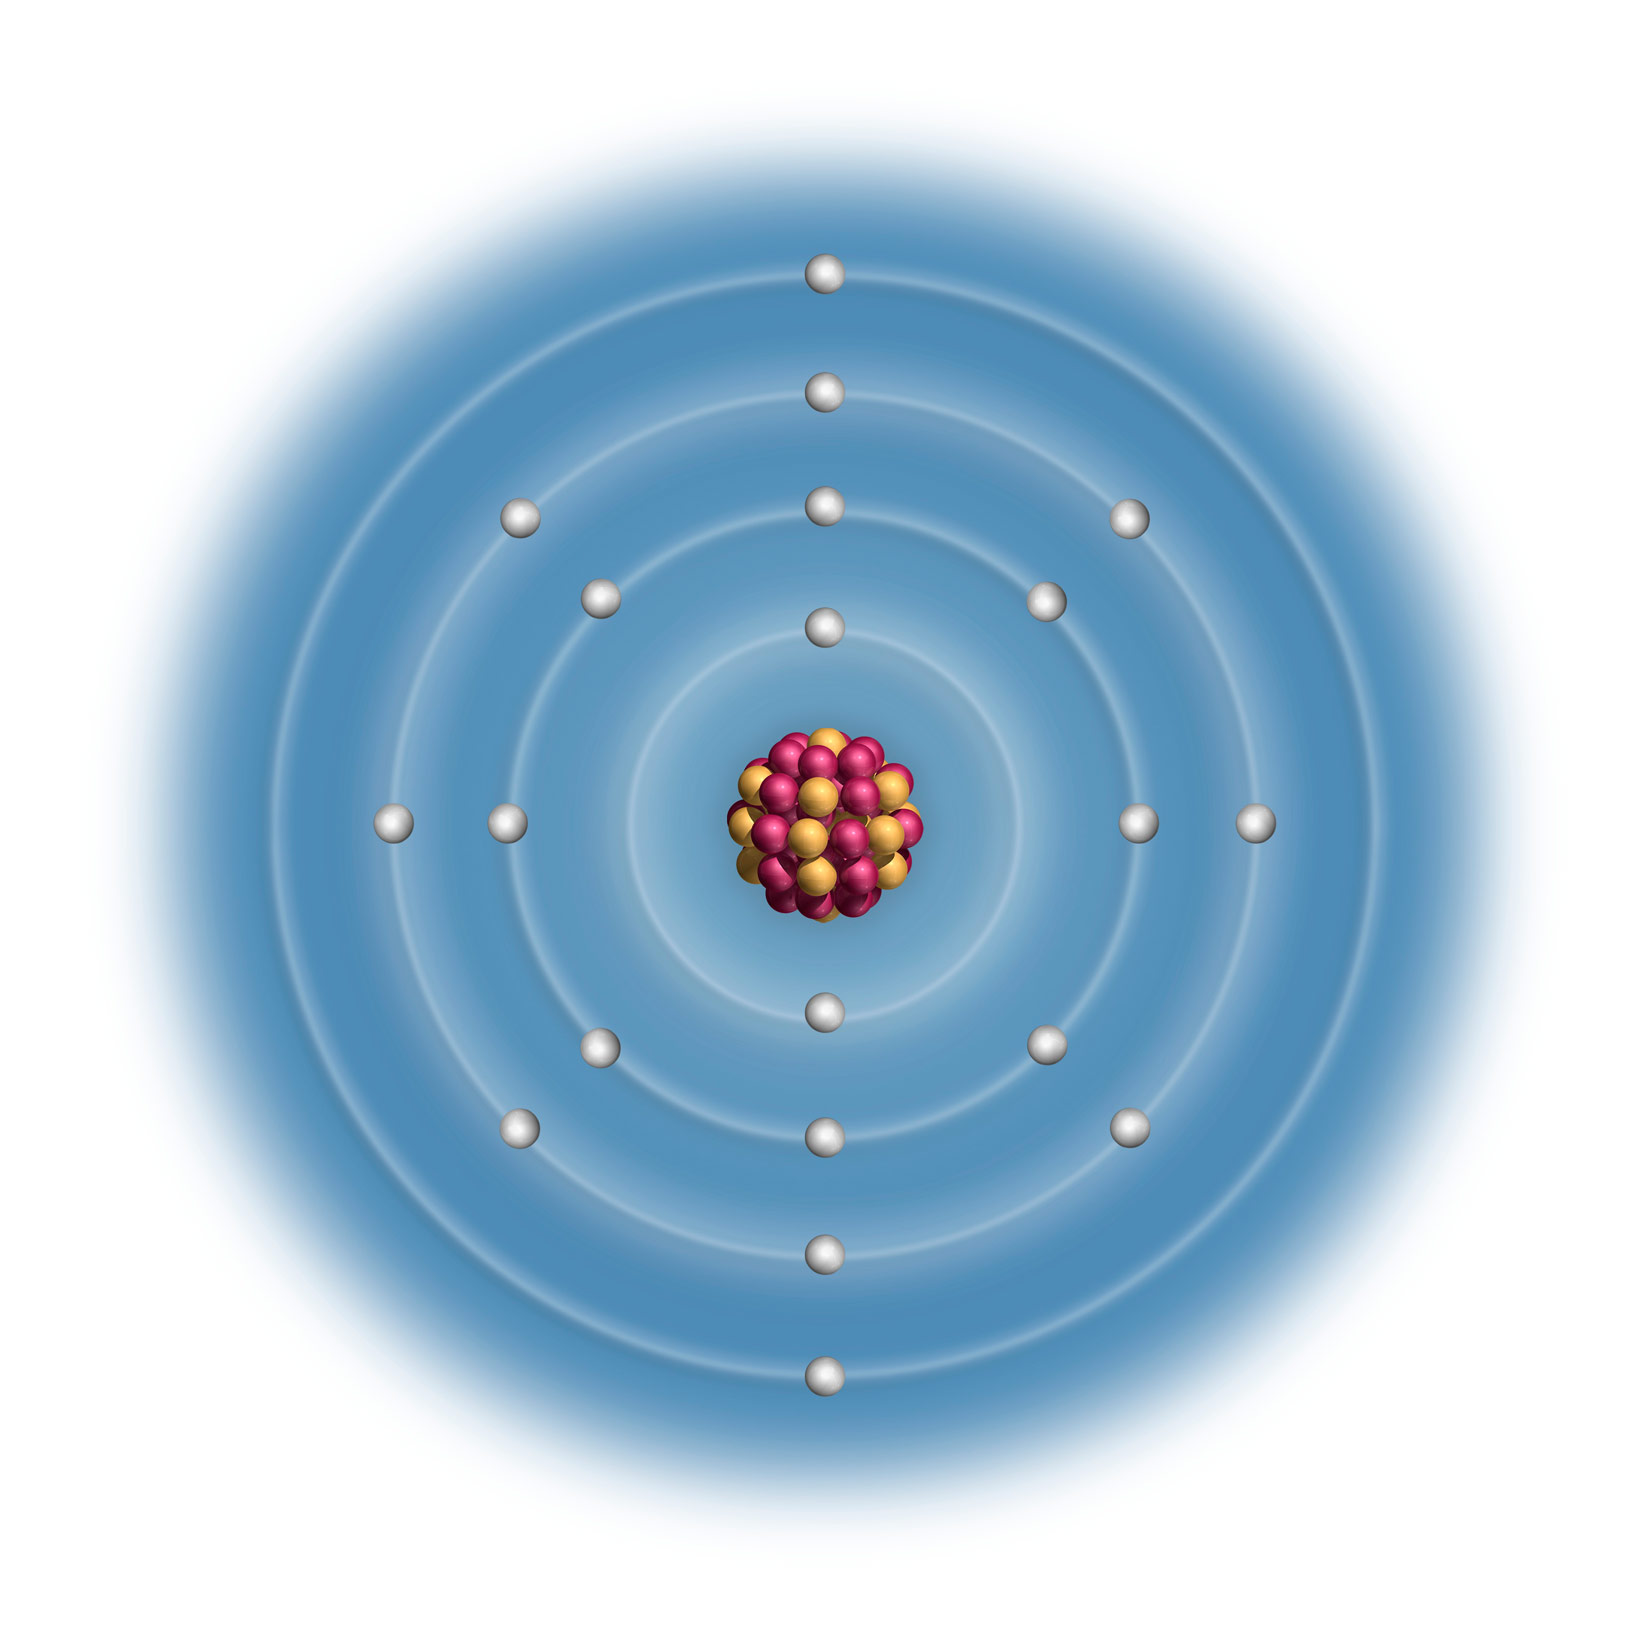 Na slici je prikazan model atoma kalcija. Jezgra je građena od 20 protona i 20 neutrona i prikazani su kao crvene i žute kuglice.U elektronskim omotačima (tri koncentrična kruga) su prikazanni 20 elektrona u obliku bijelih kuglica.